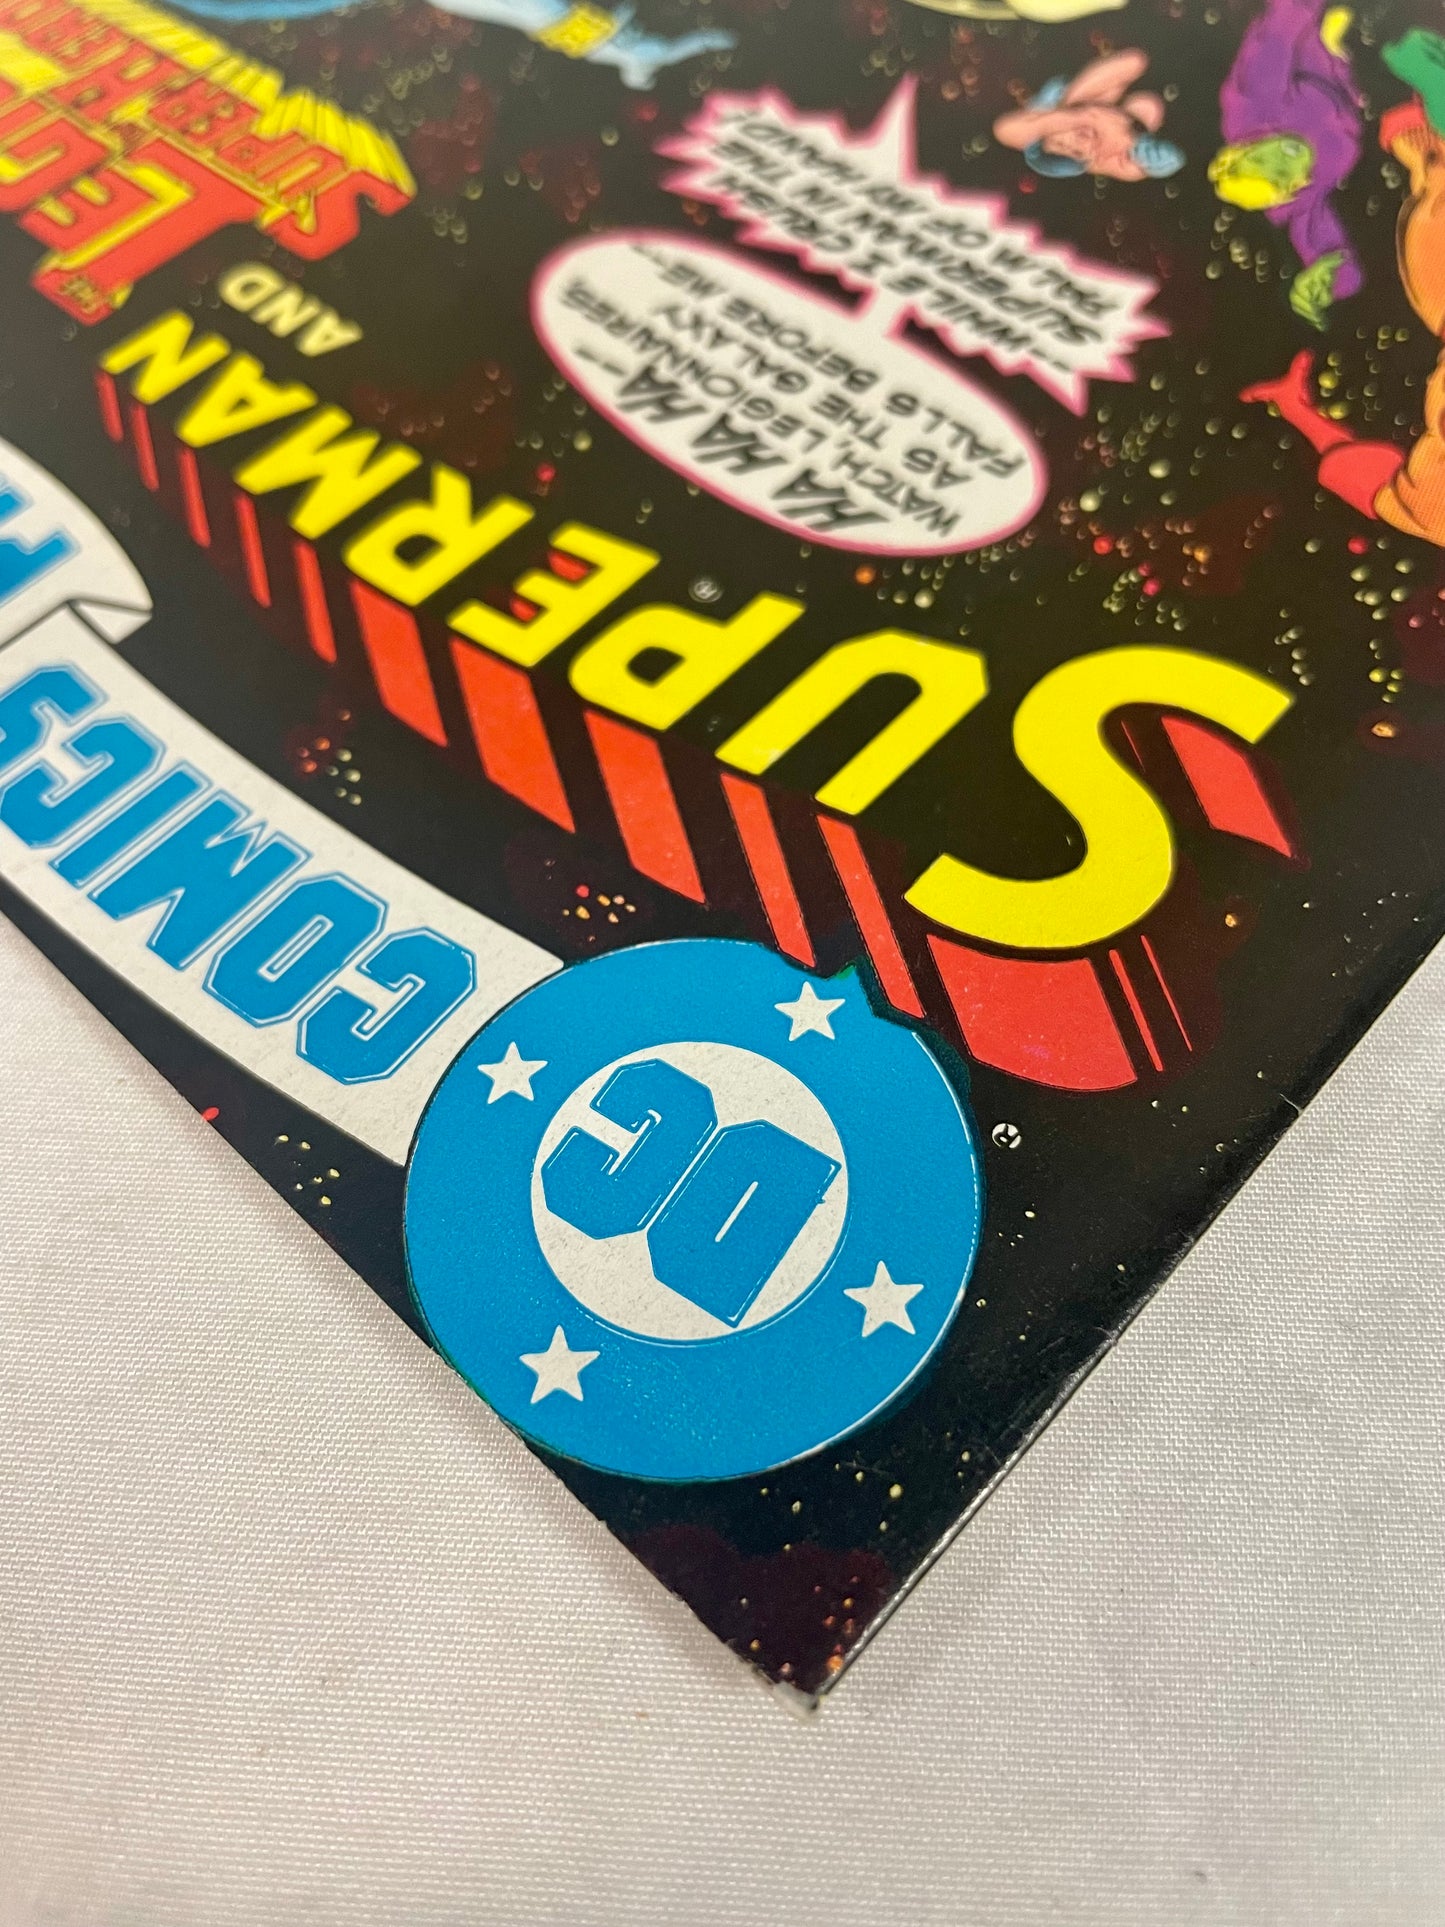 DC Comics Presents No. 43